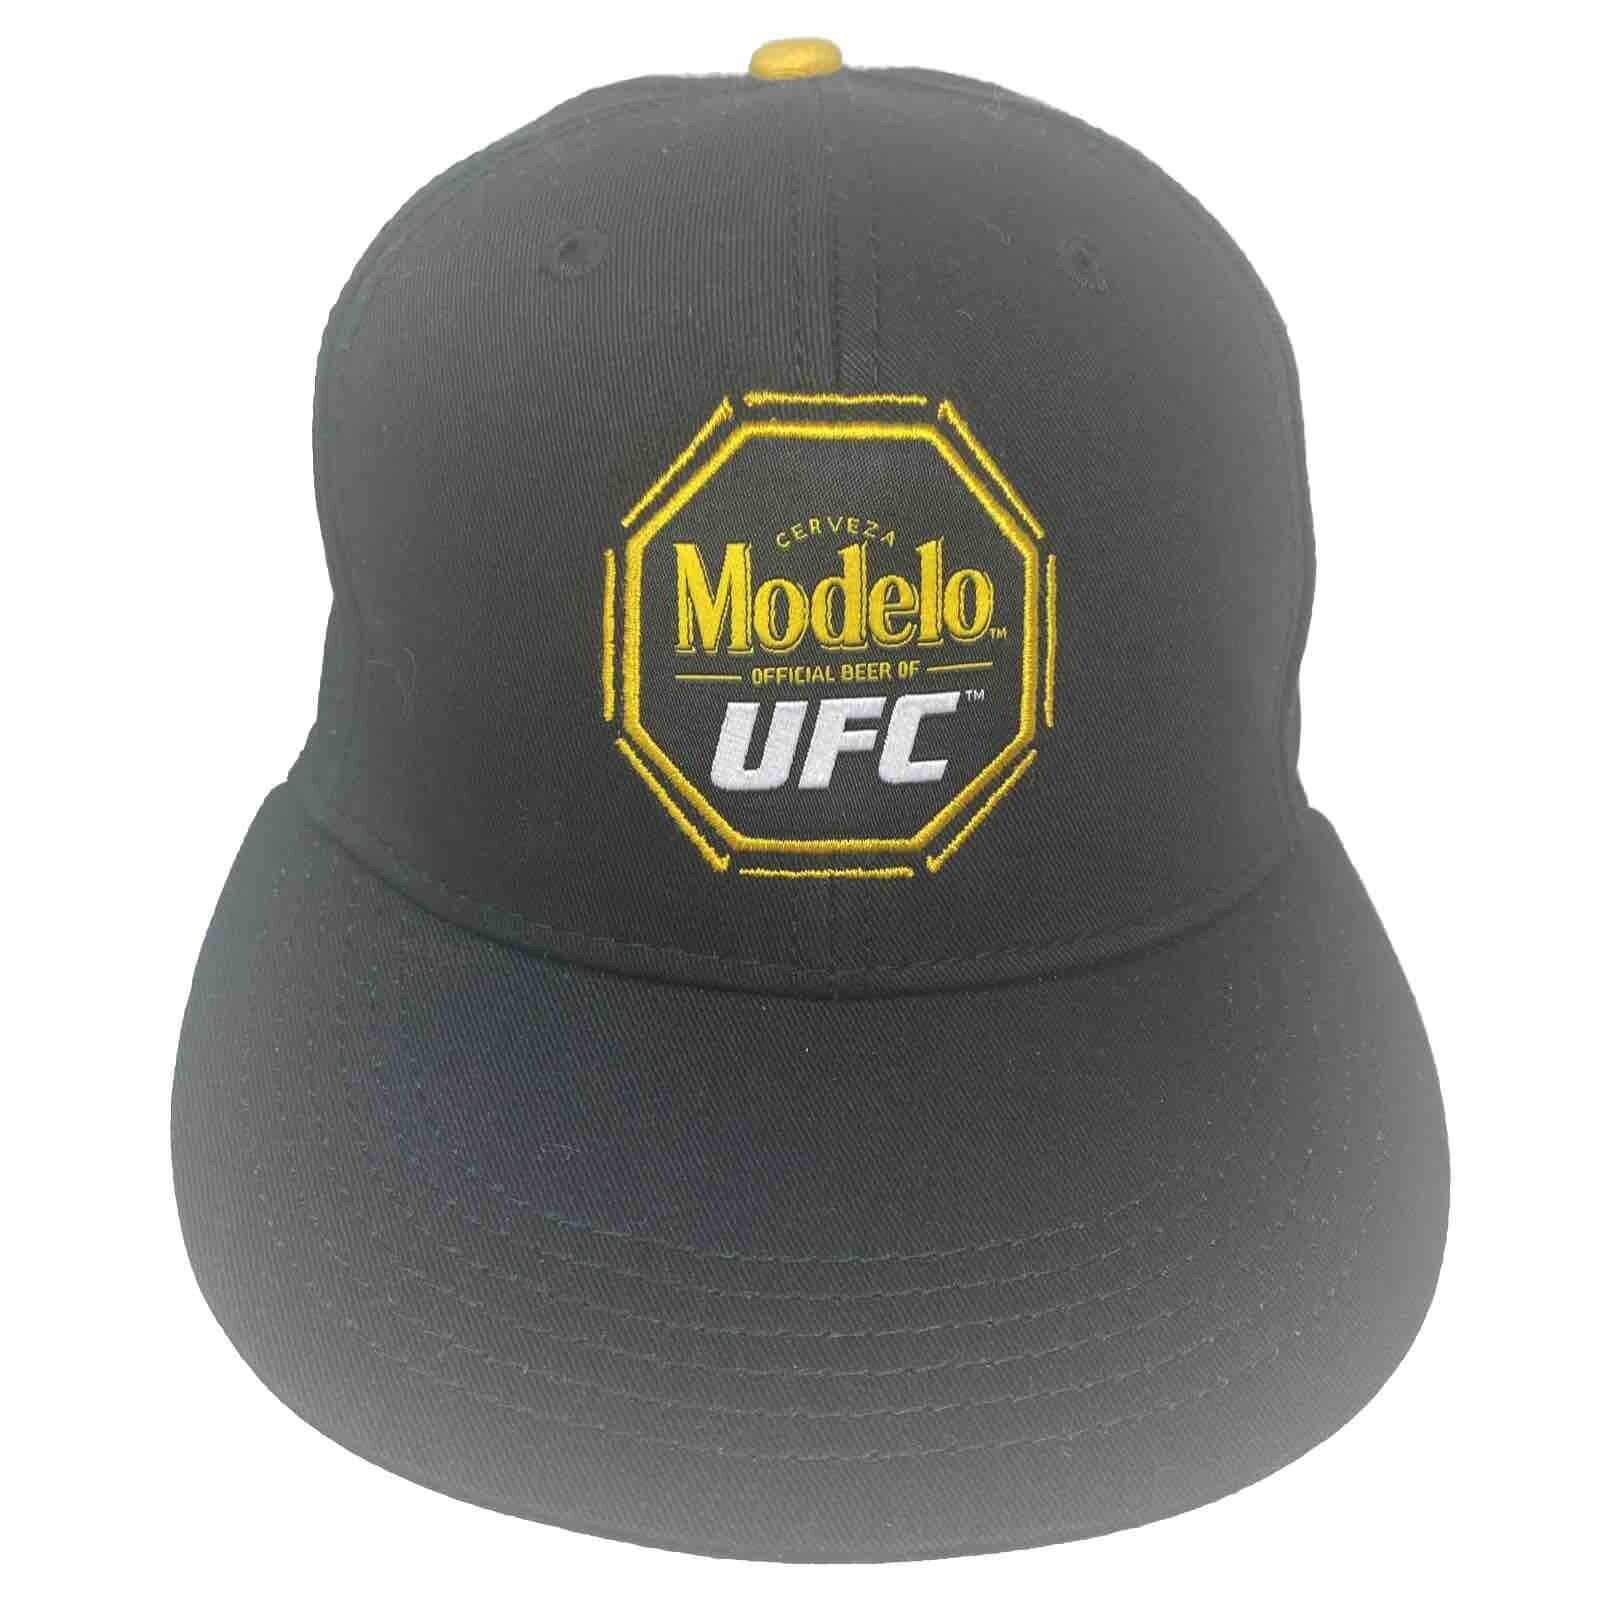 Modelo Cerveza UFC Black Gold Back Adjustable Hat New Rare